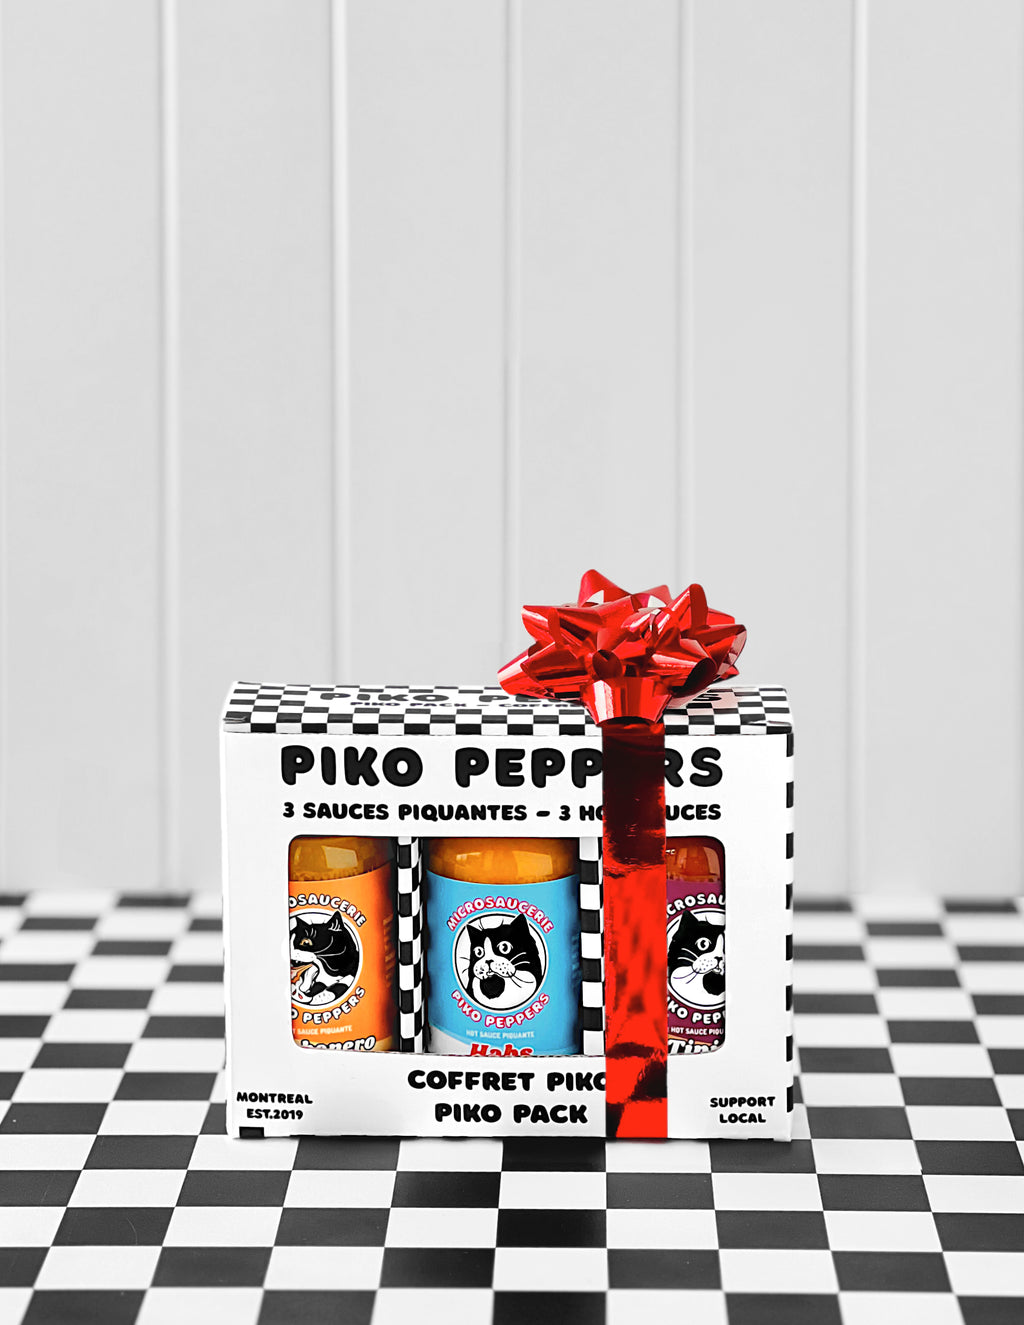 Piko Riko – Microsaucerie Piko peppers